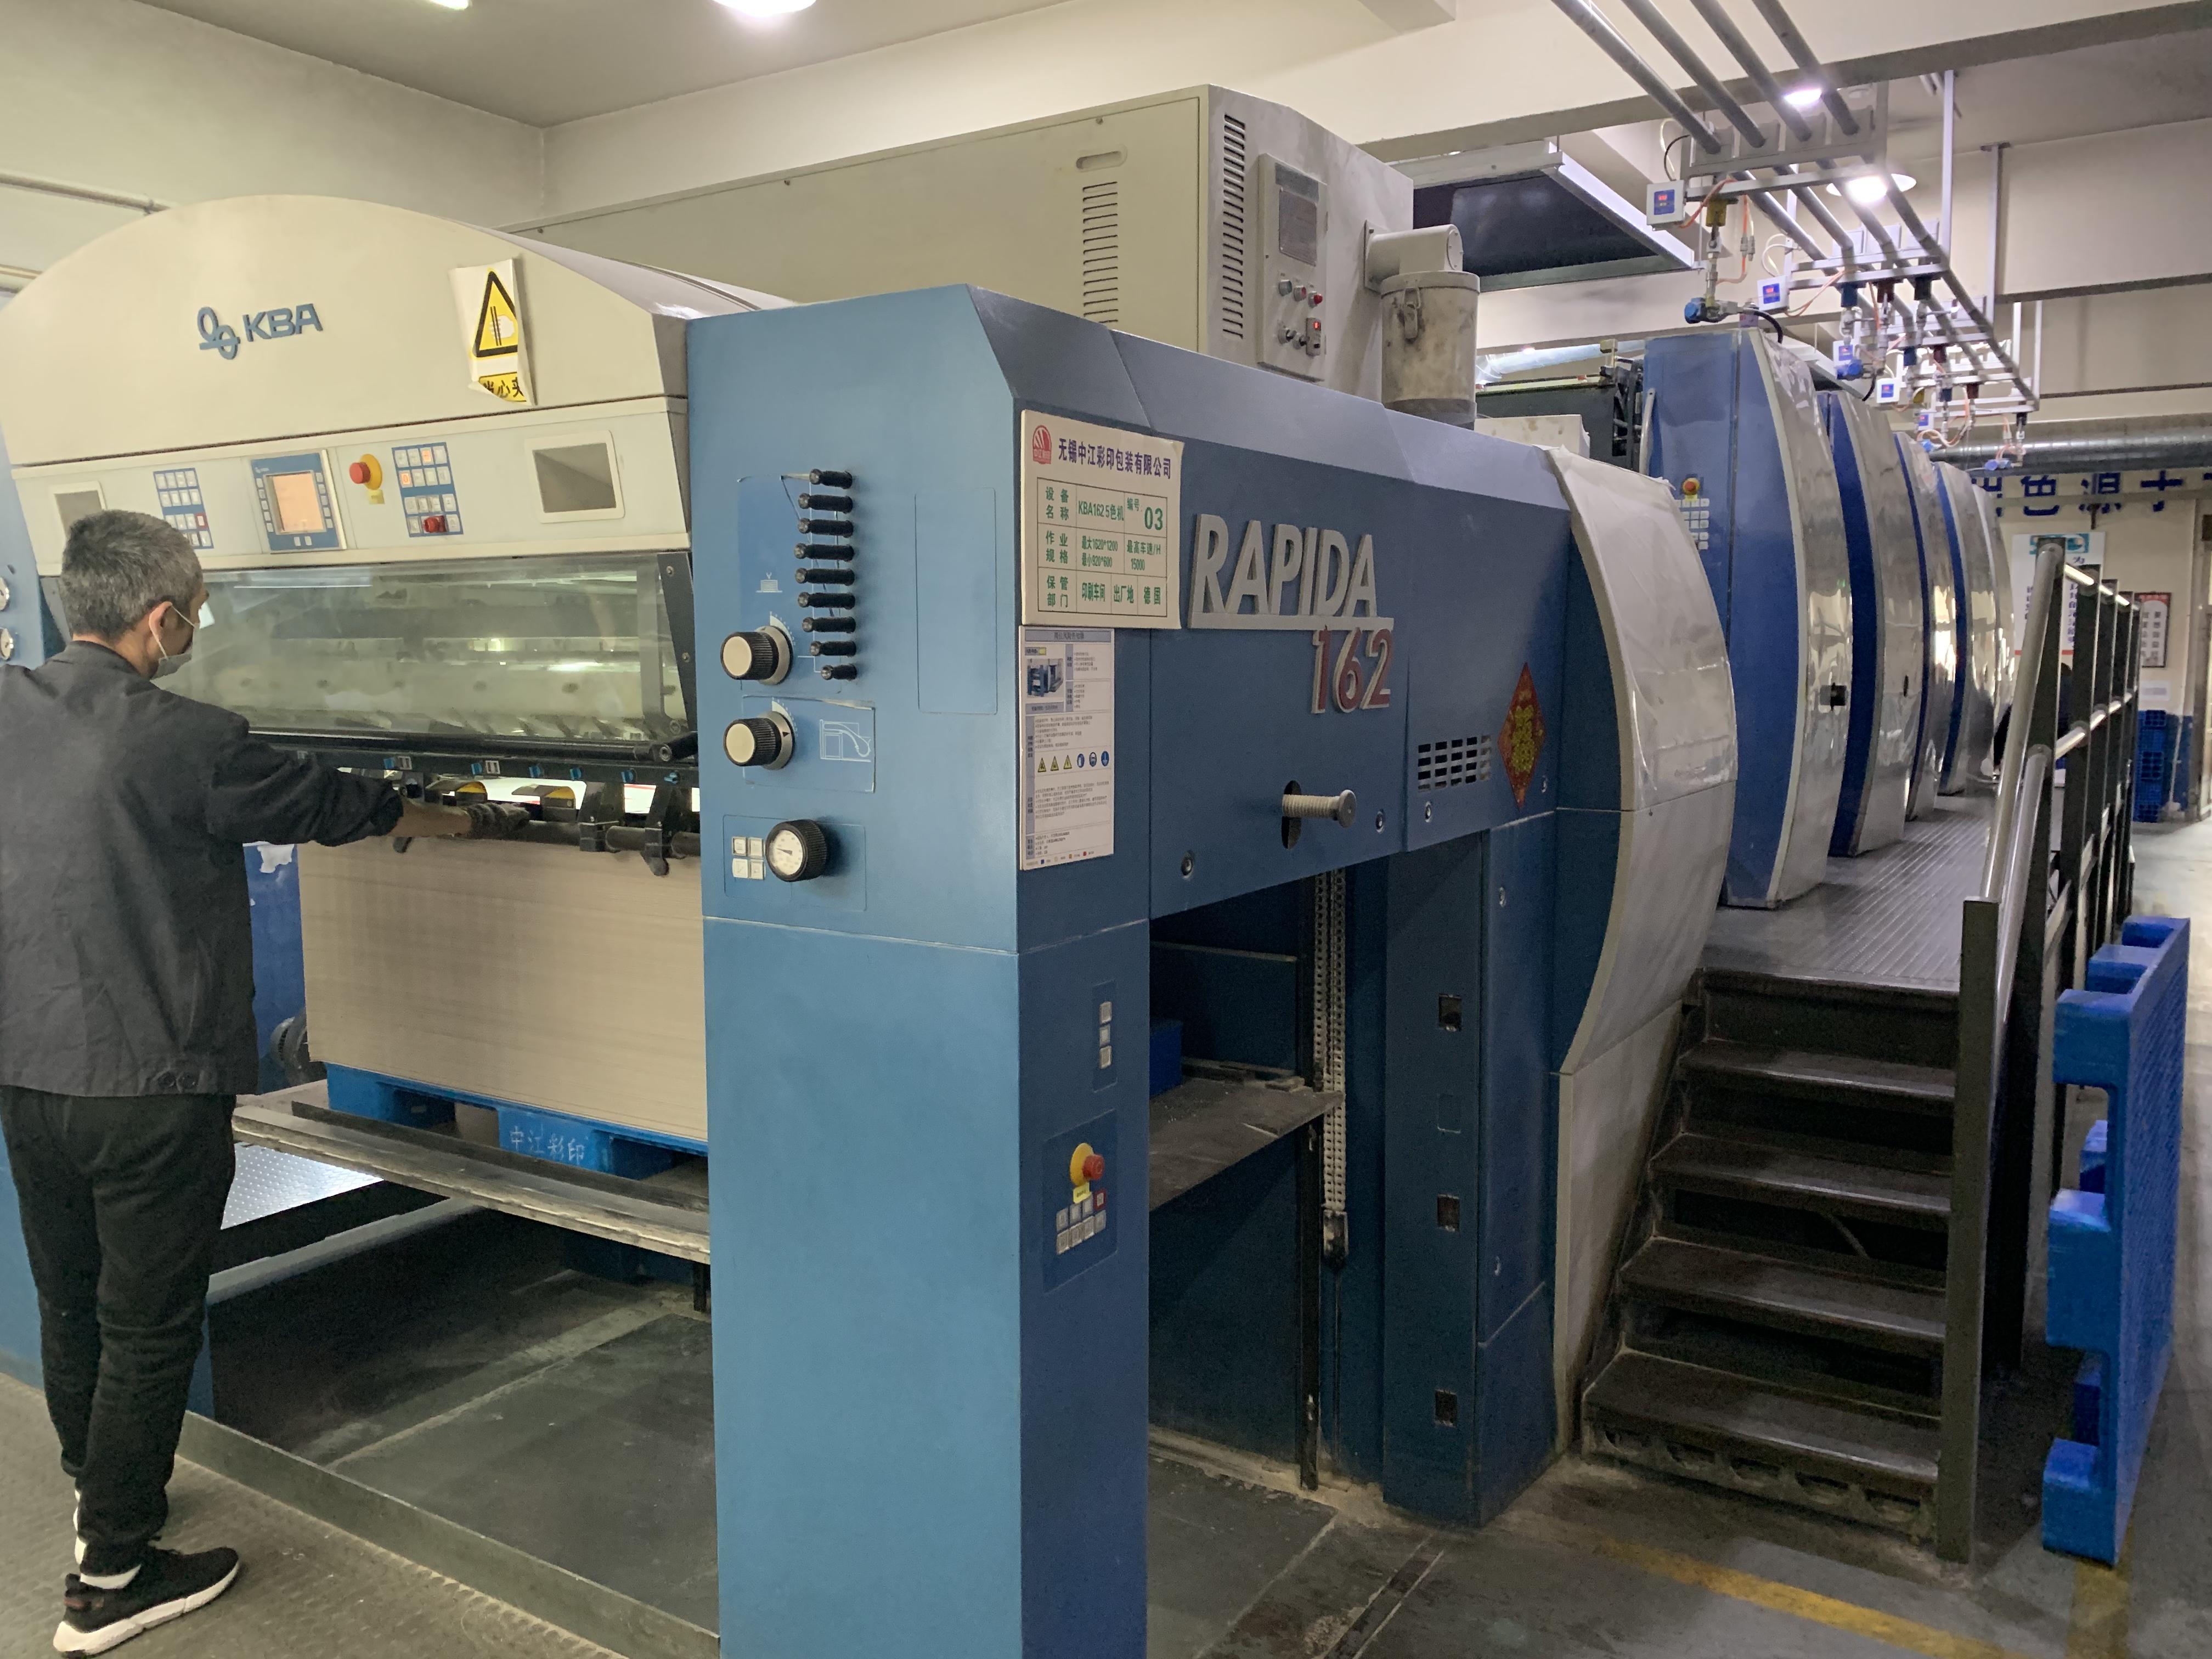 KBA 162 5 Printing machine